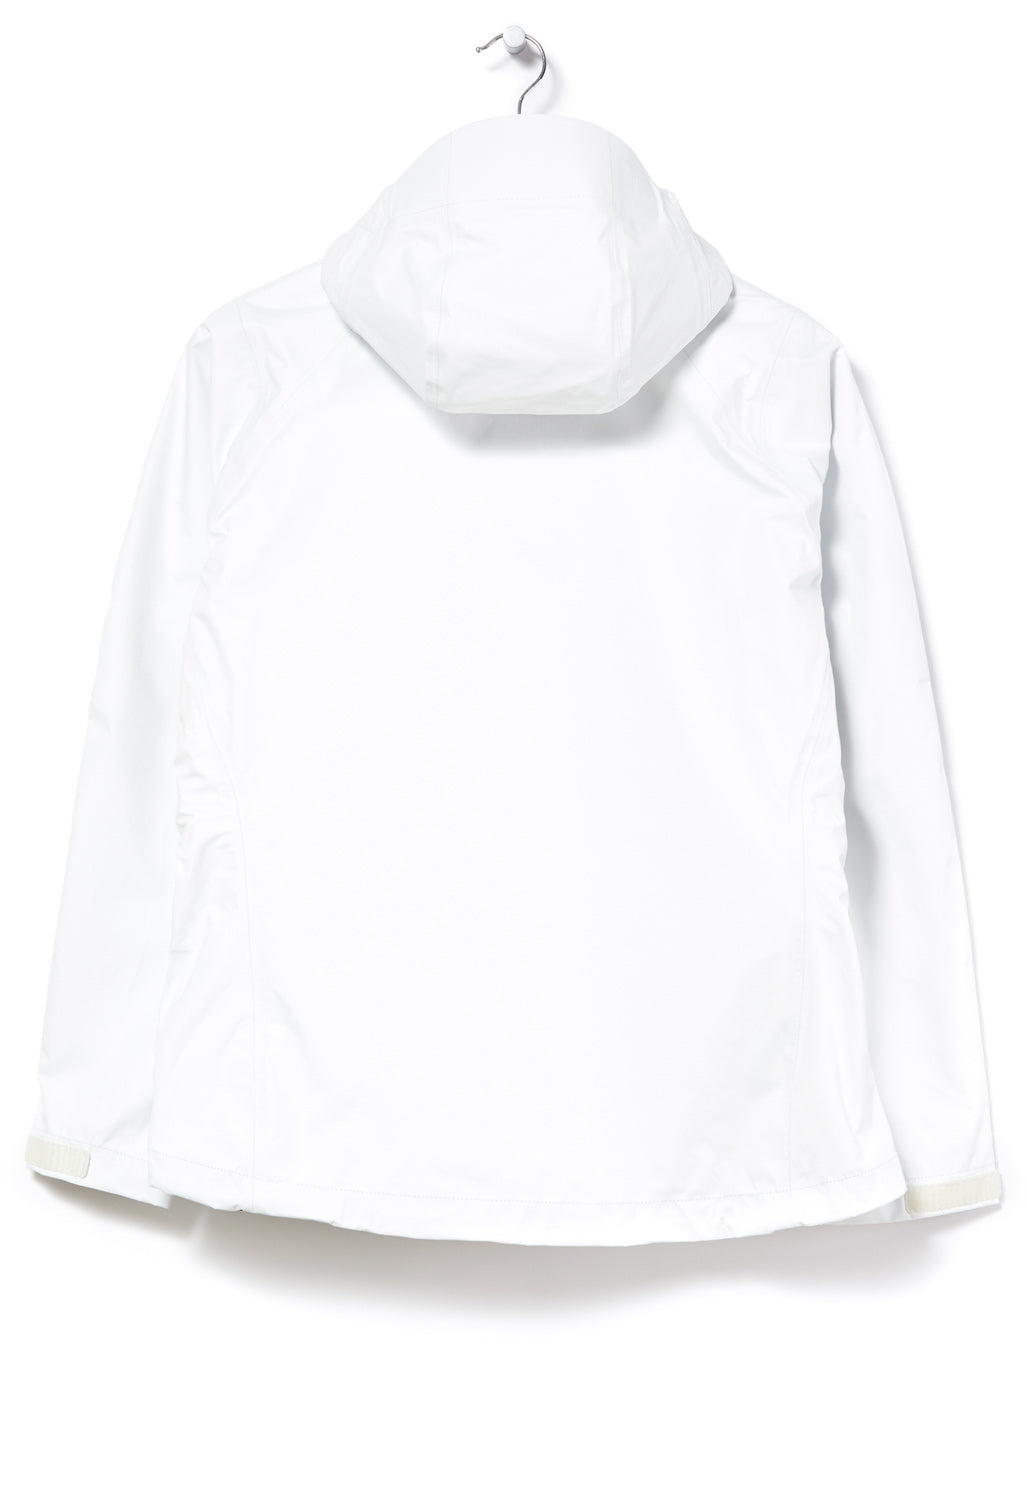 Patagonia Torrentshell 3L Women's Jacket - Birch White